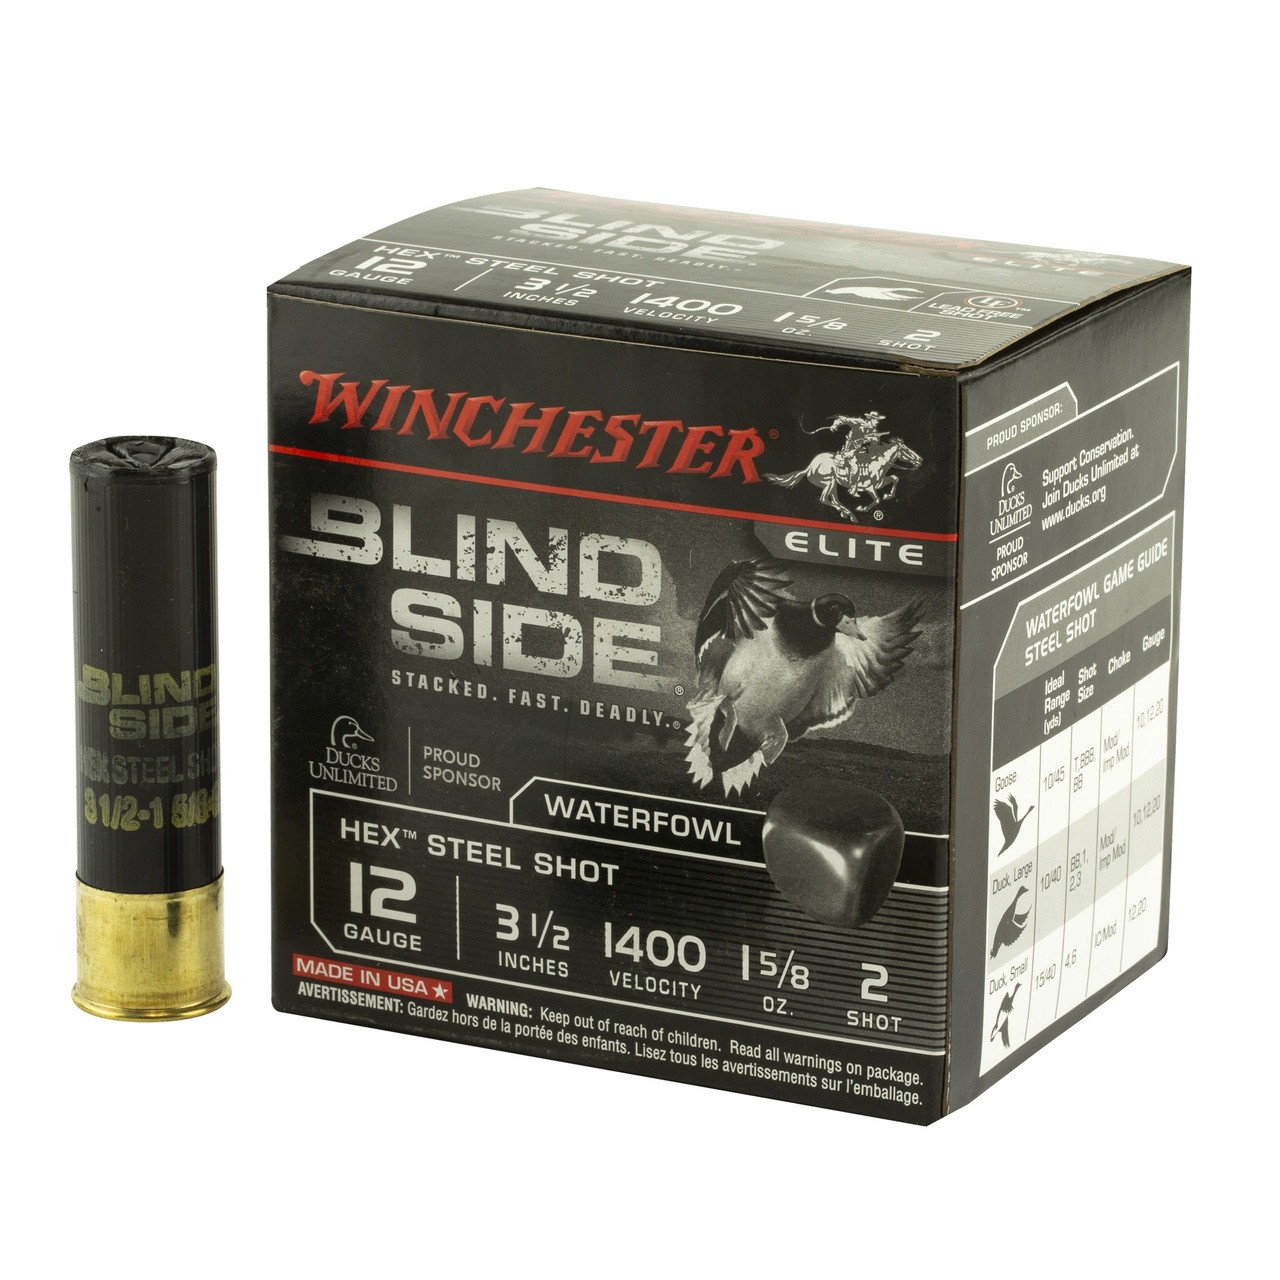 Winchester Xpert High Velocity 12ga Ammo 3-1/2 1-3/8 oz #BB Non